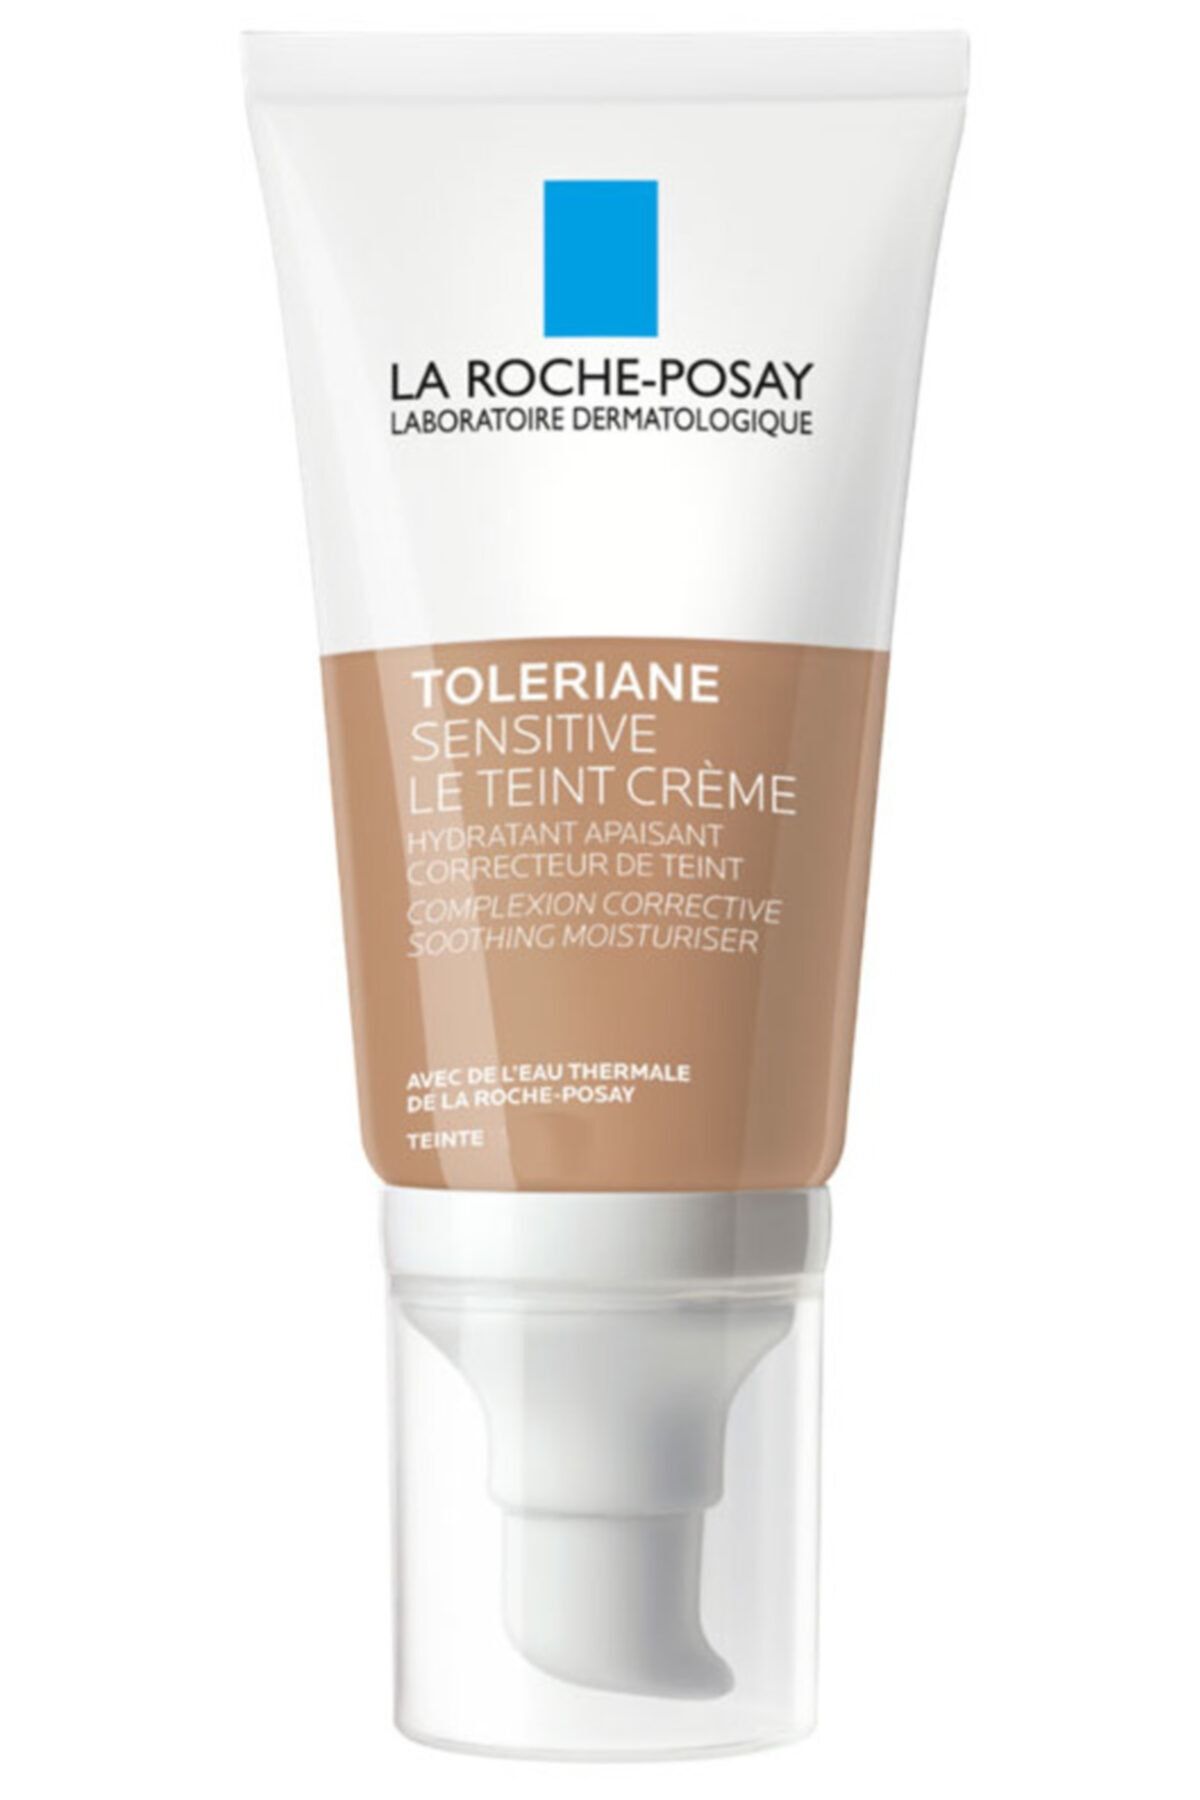 La Roche Posay La Roche Pasy Toleriane Sensitive Le Teint Creme Medium 50 ml